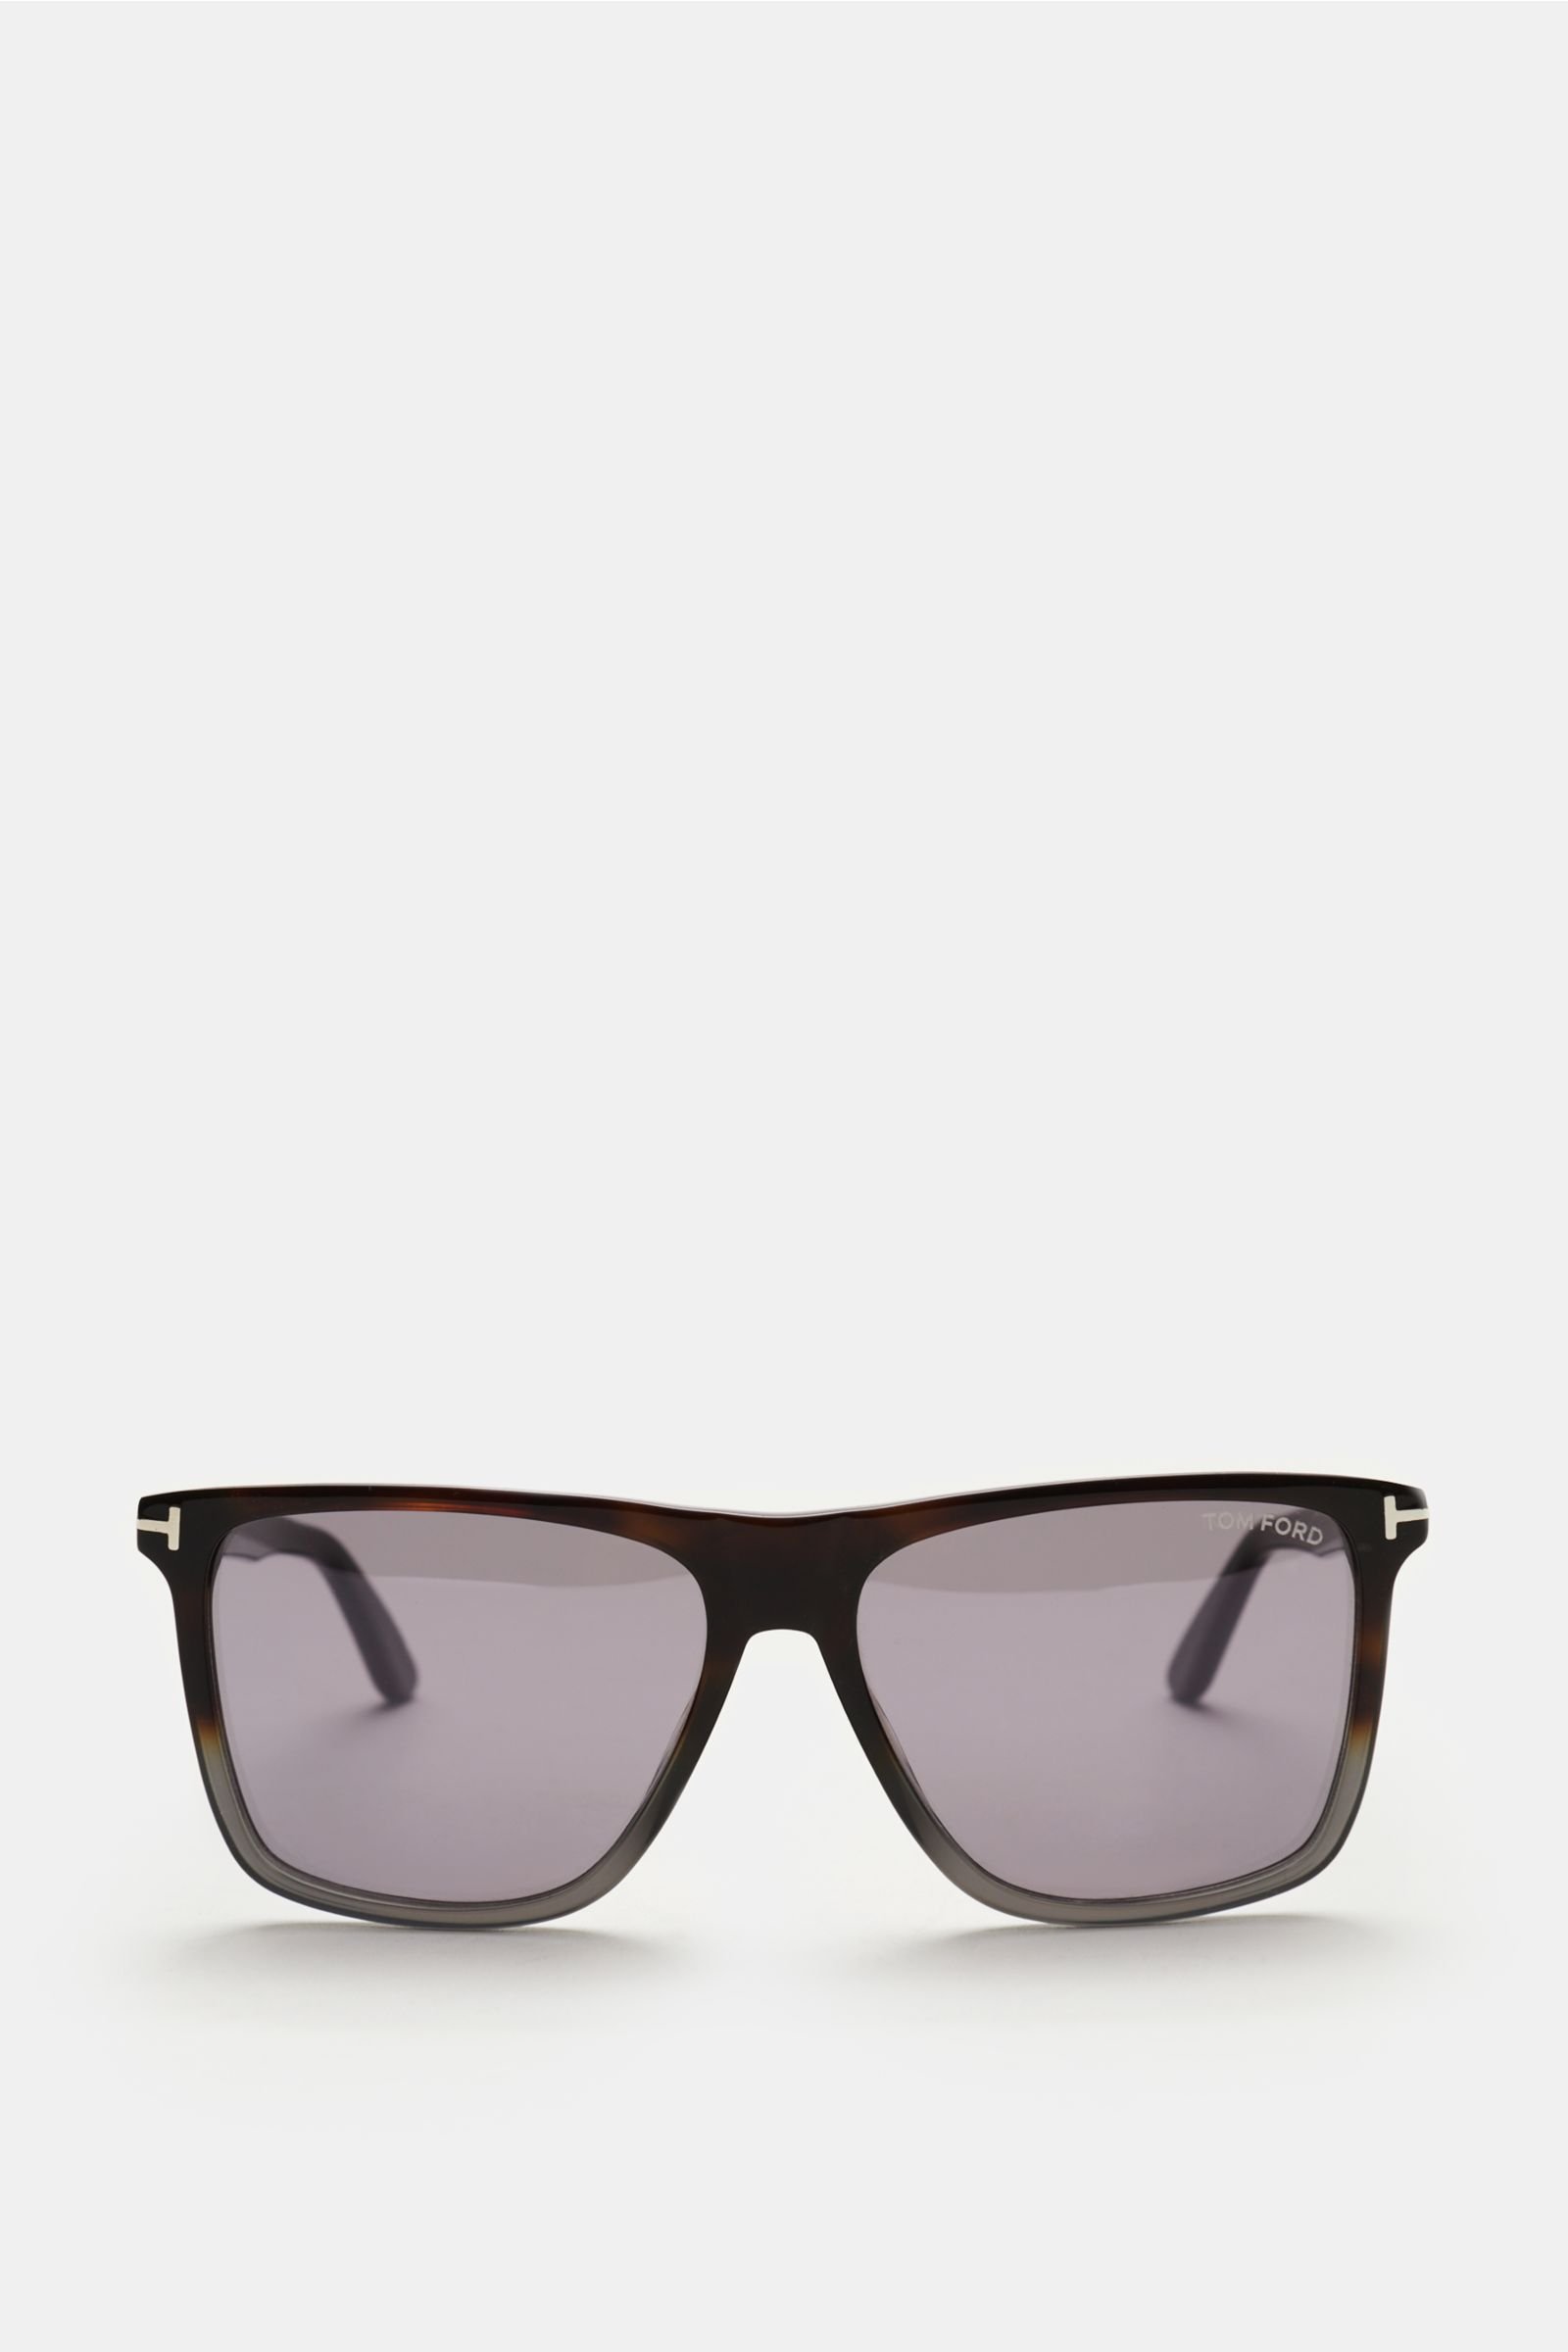 Sunglasses 'Fletcher' dark brown/dark grey